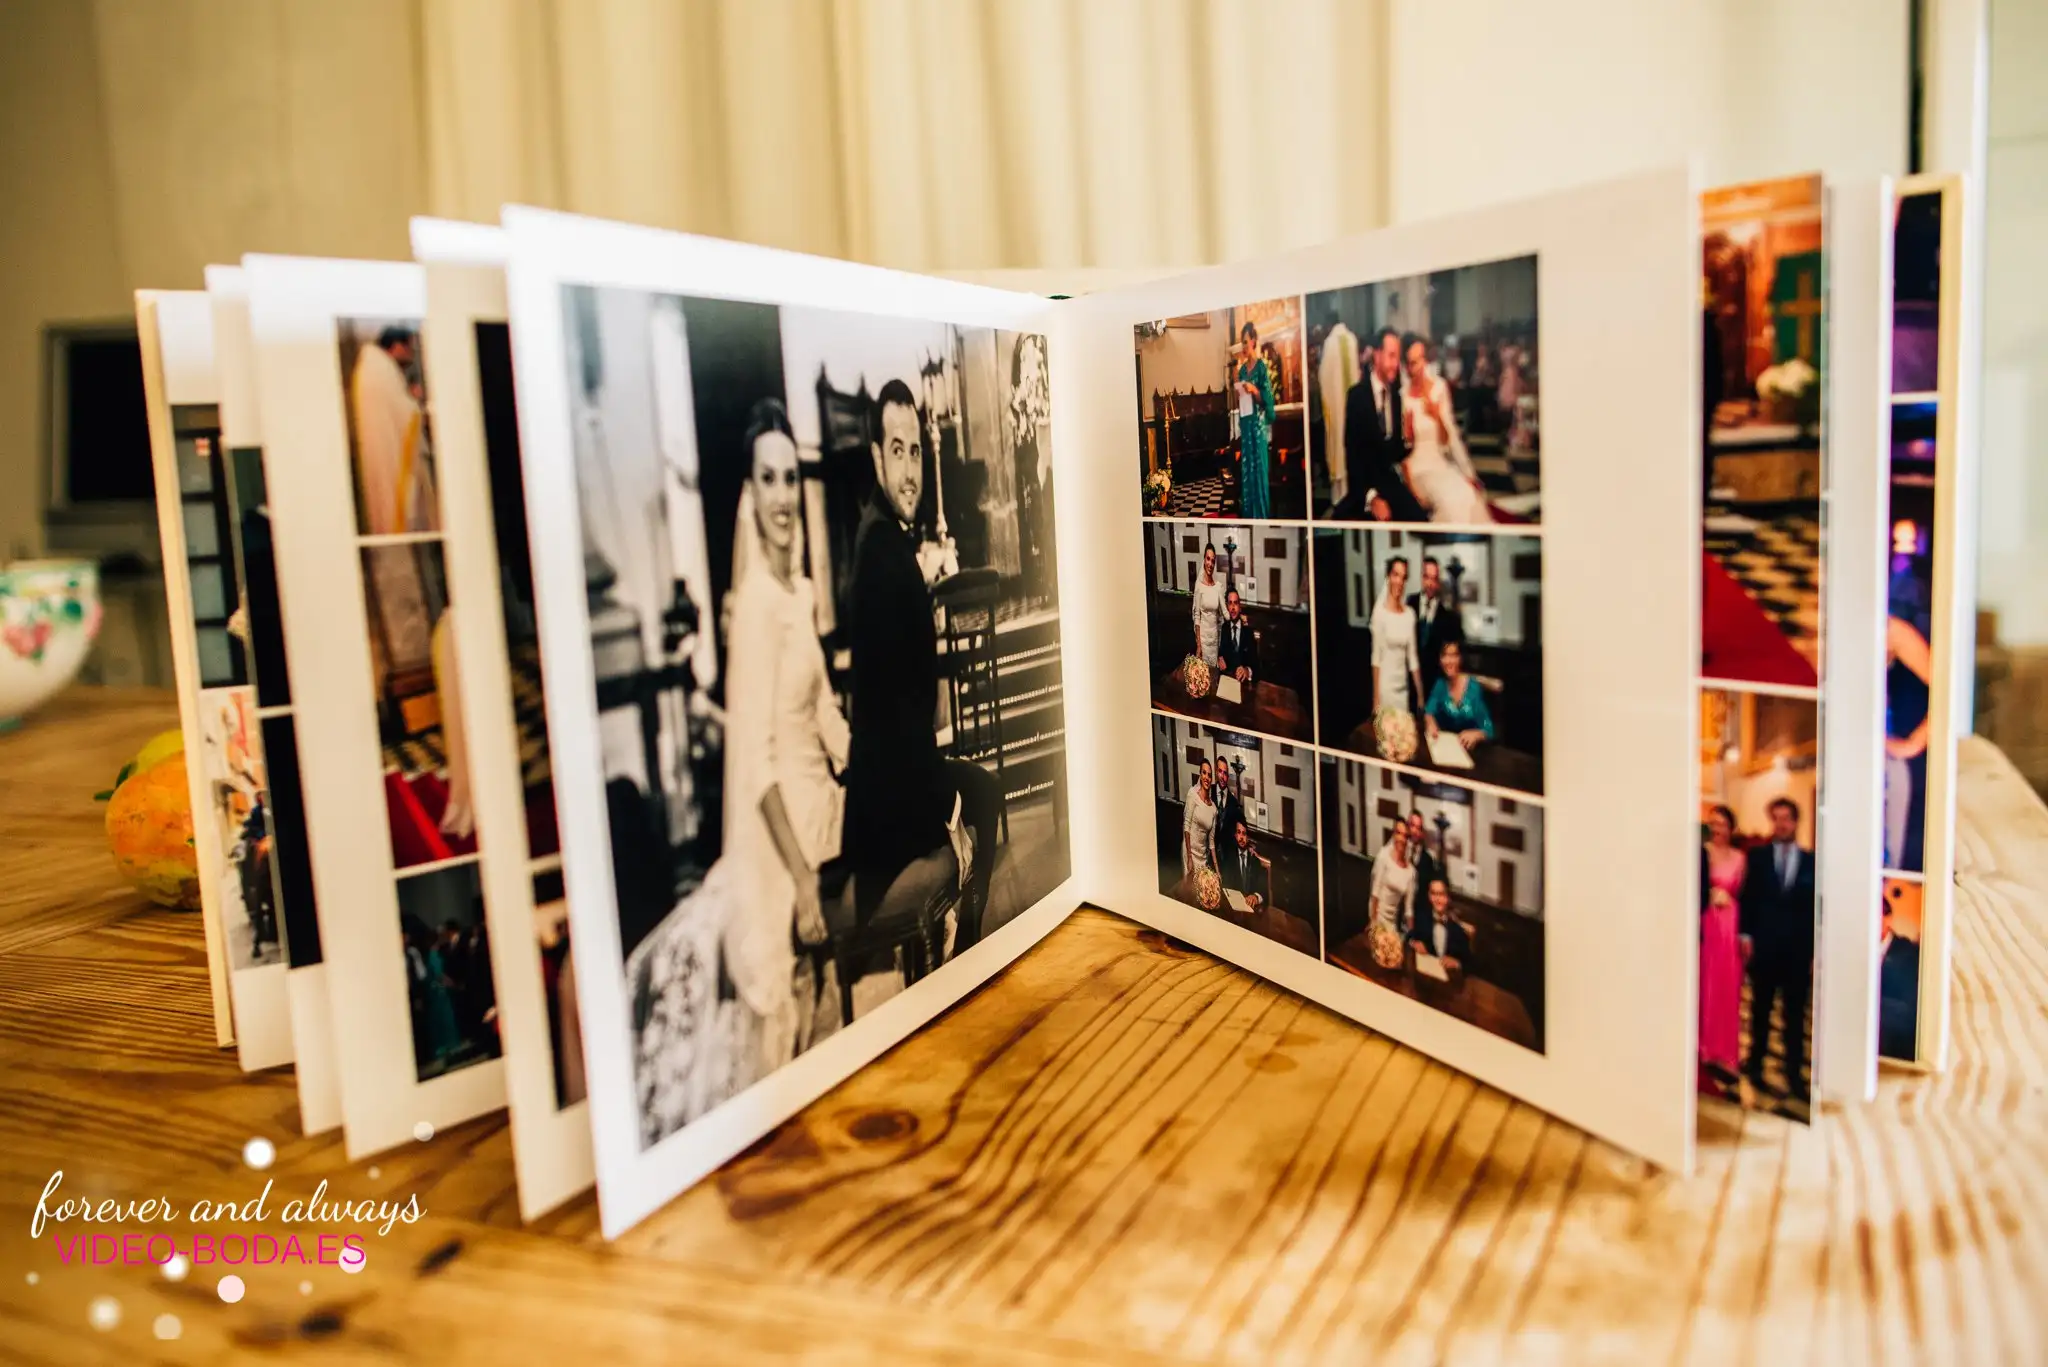 álbum de boda, reportaje de boda impreso, libros originales